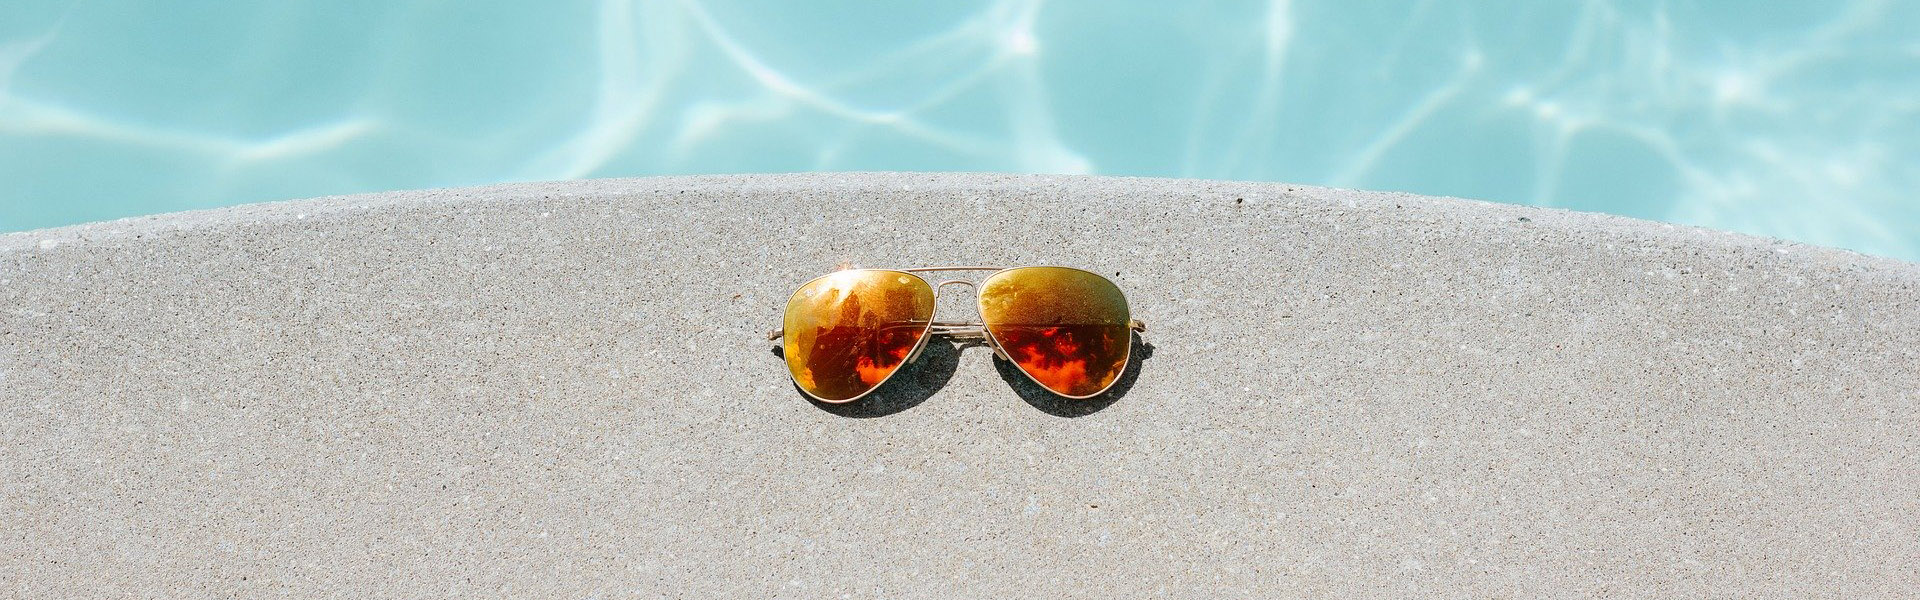 Sonnenbrille am Beckenrand eines Pools